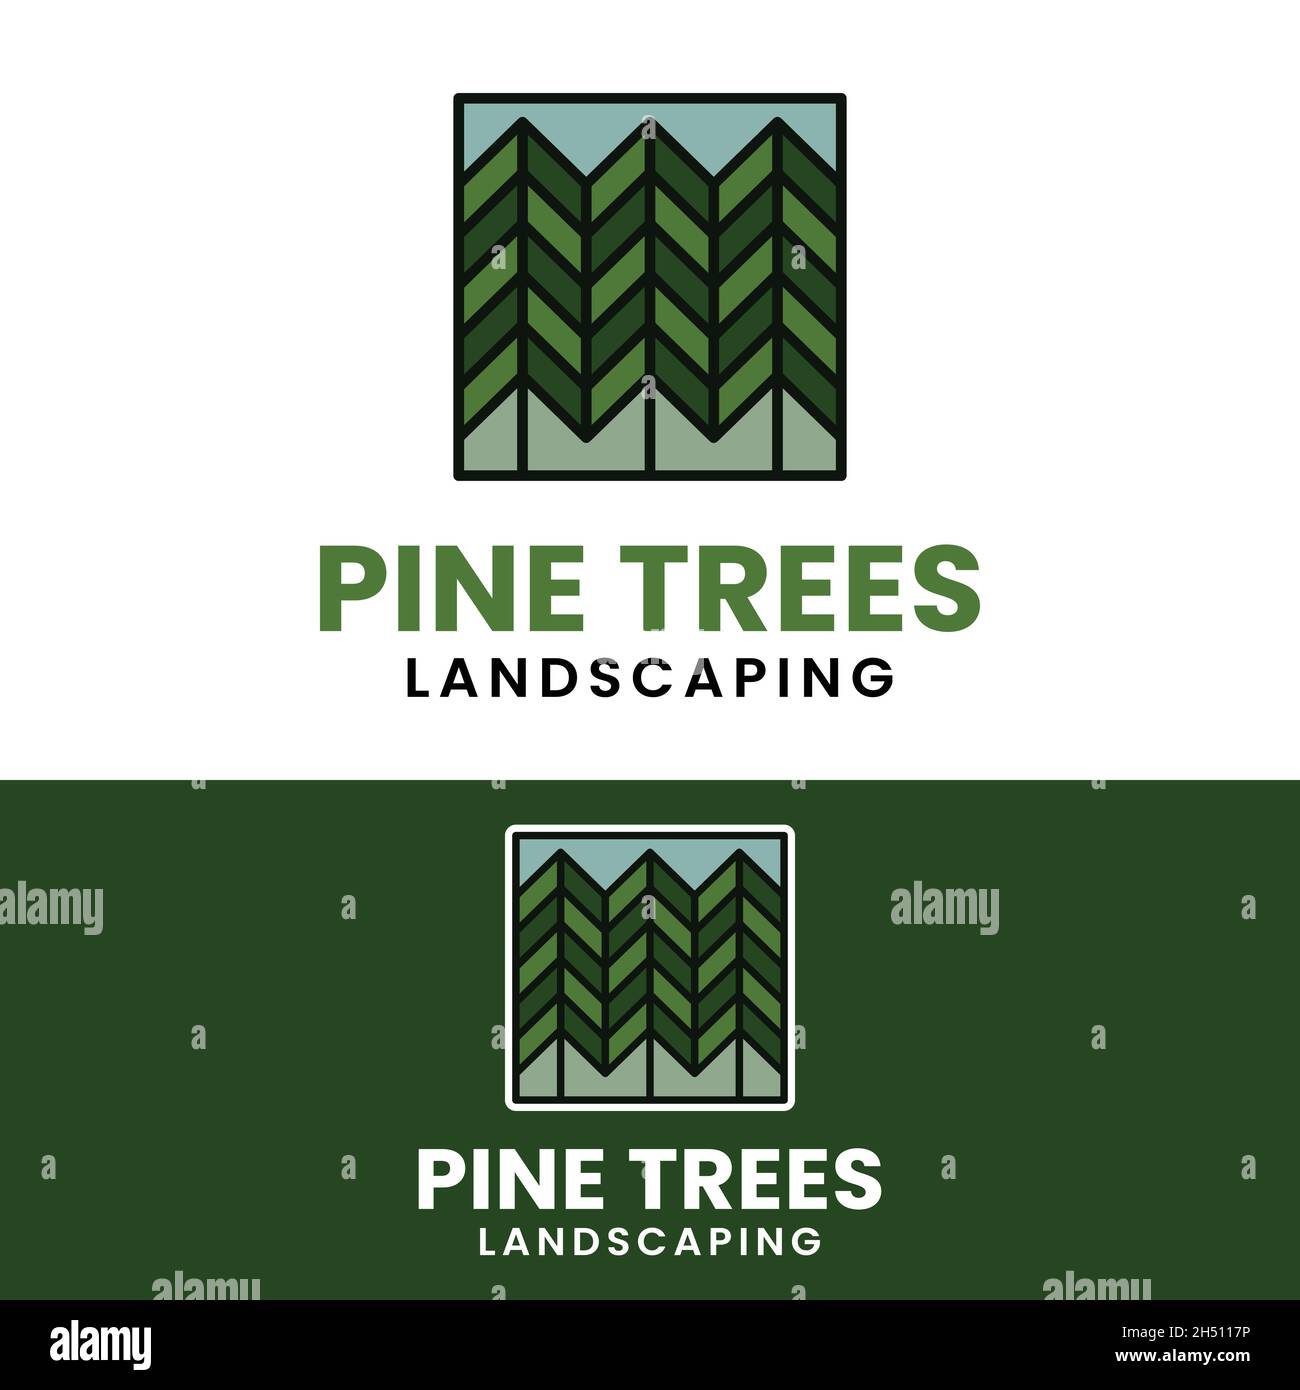 Farbige Linie Linear Pine Pinus Evergreen Fir Zypresse Nadelbaum Fichte Hemlock Lärche Zedernbaum Forest Camp Outdoor-Abenteuer Vintage Hipster. Stock Vektor